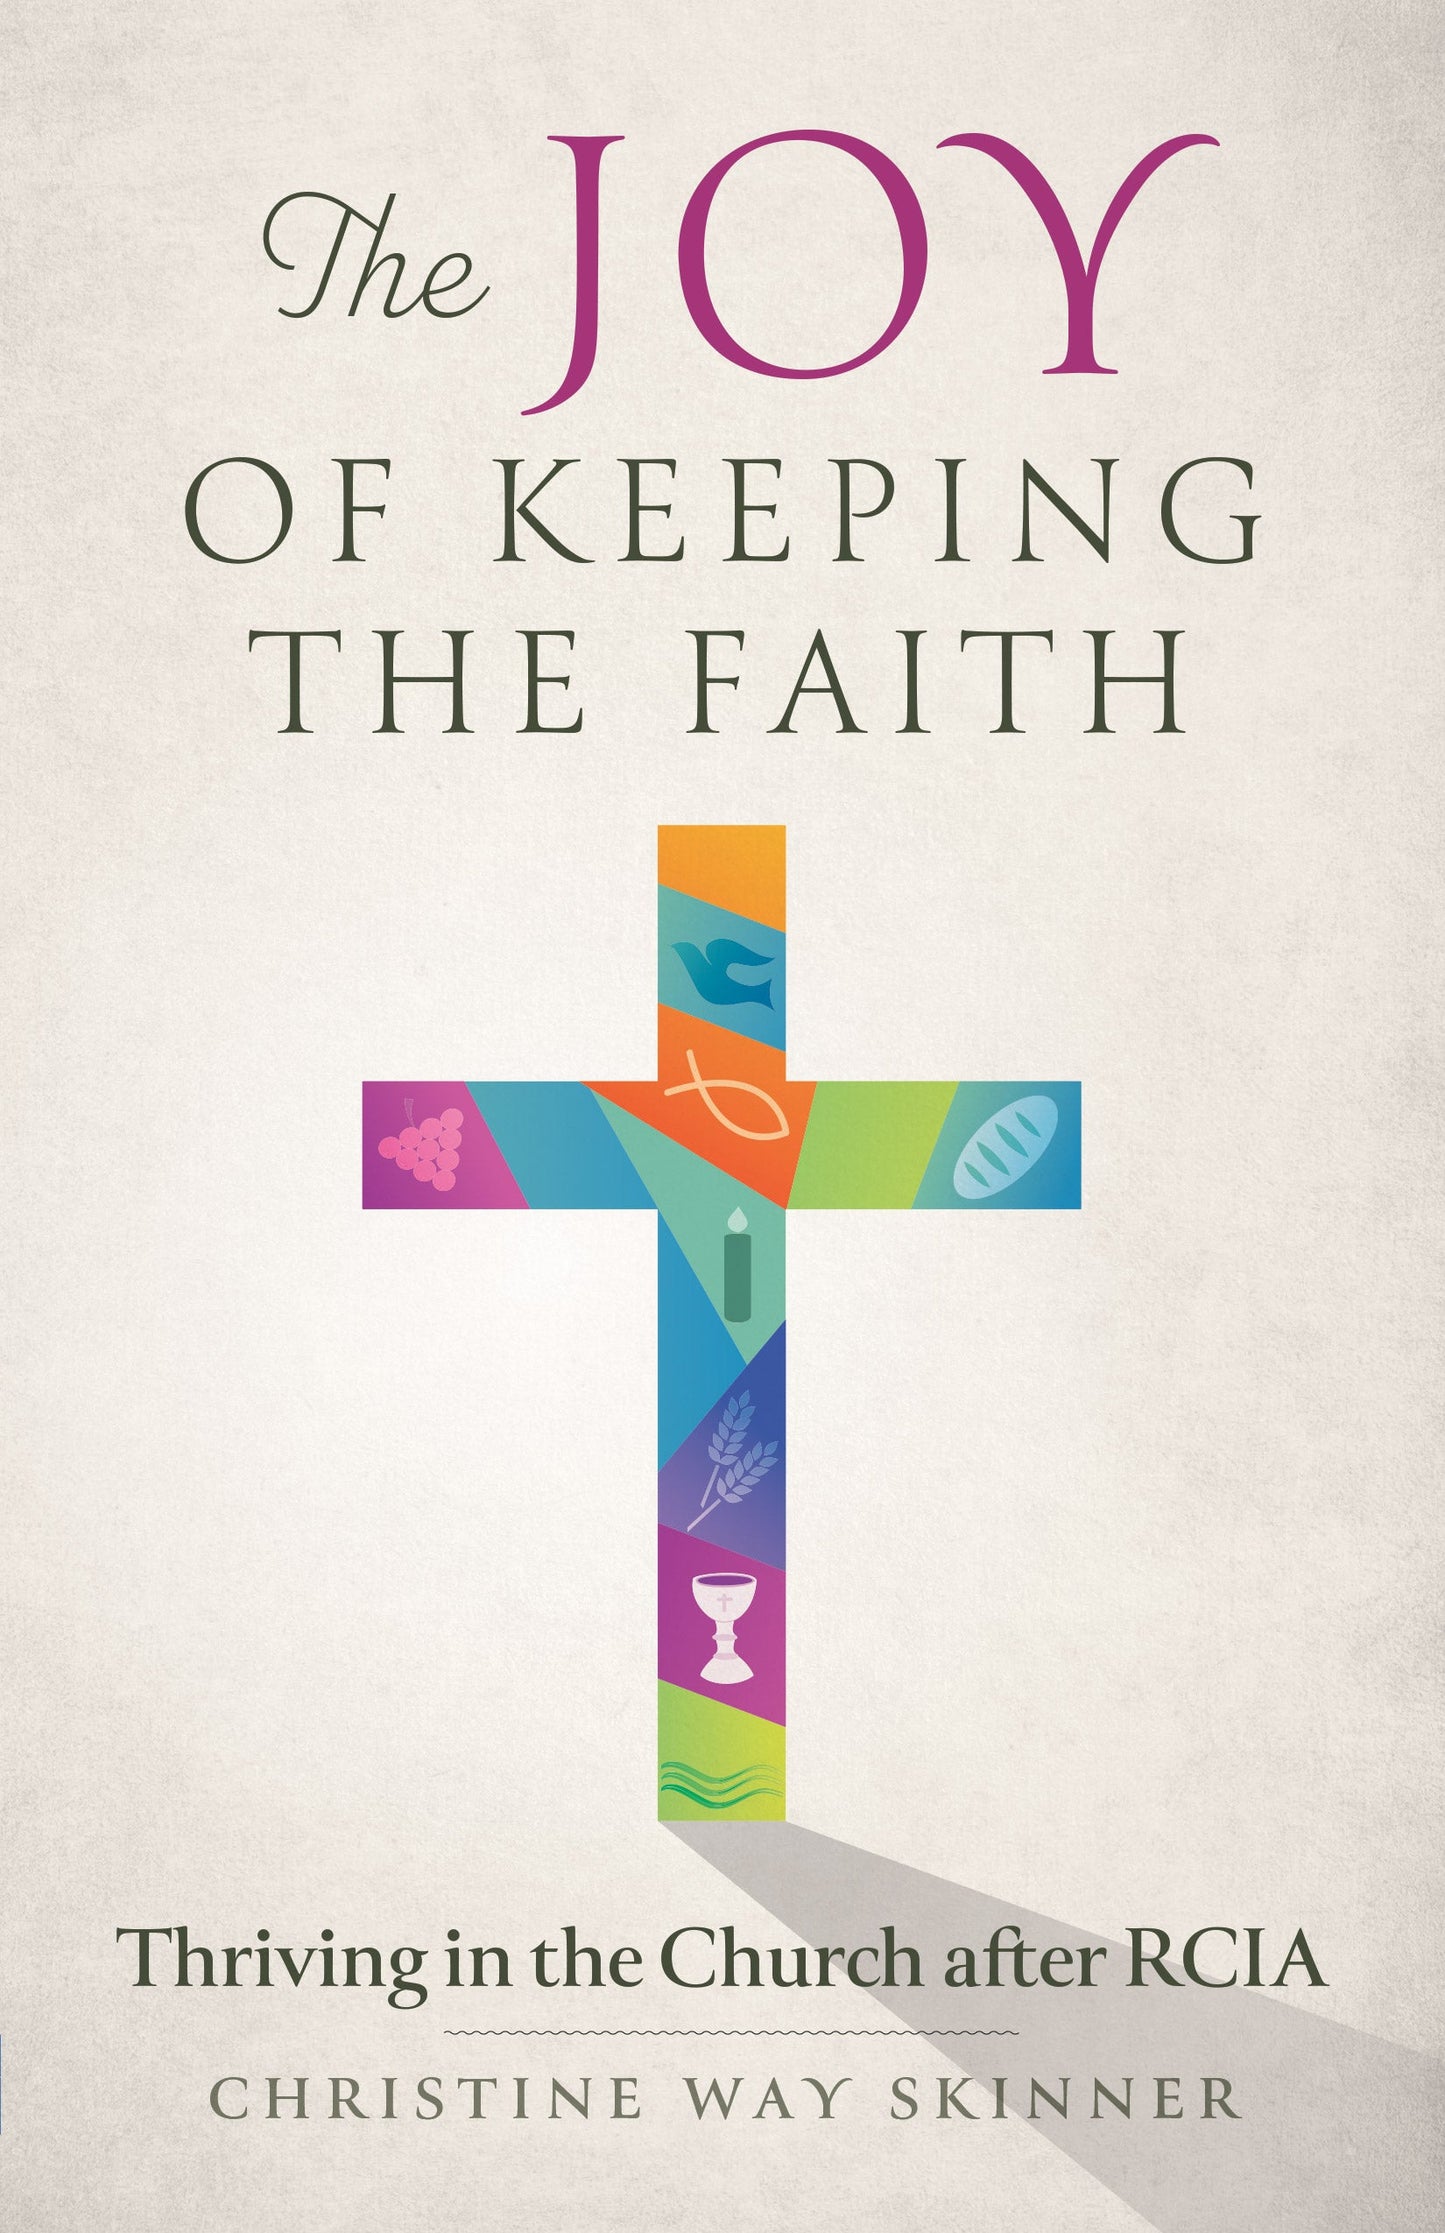 The Joy of Keeping the Faith